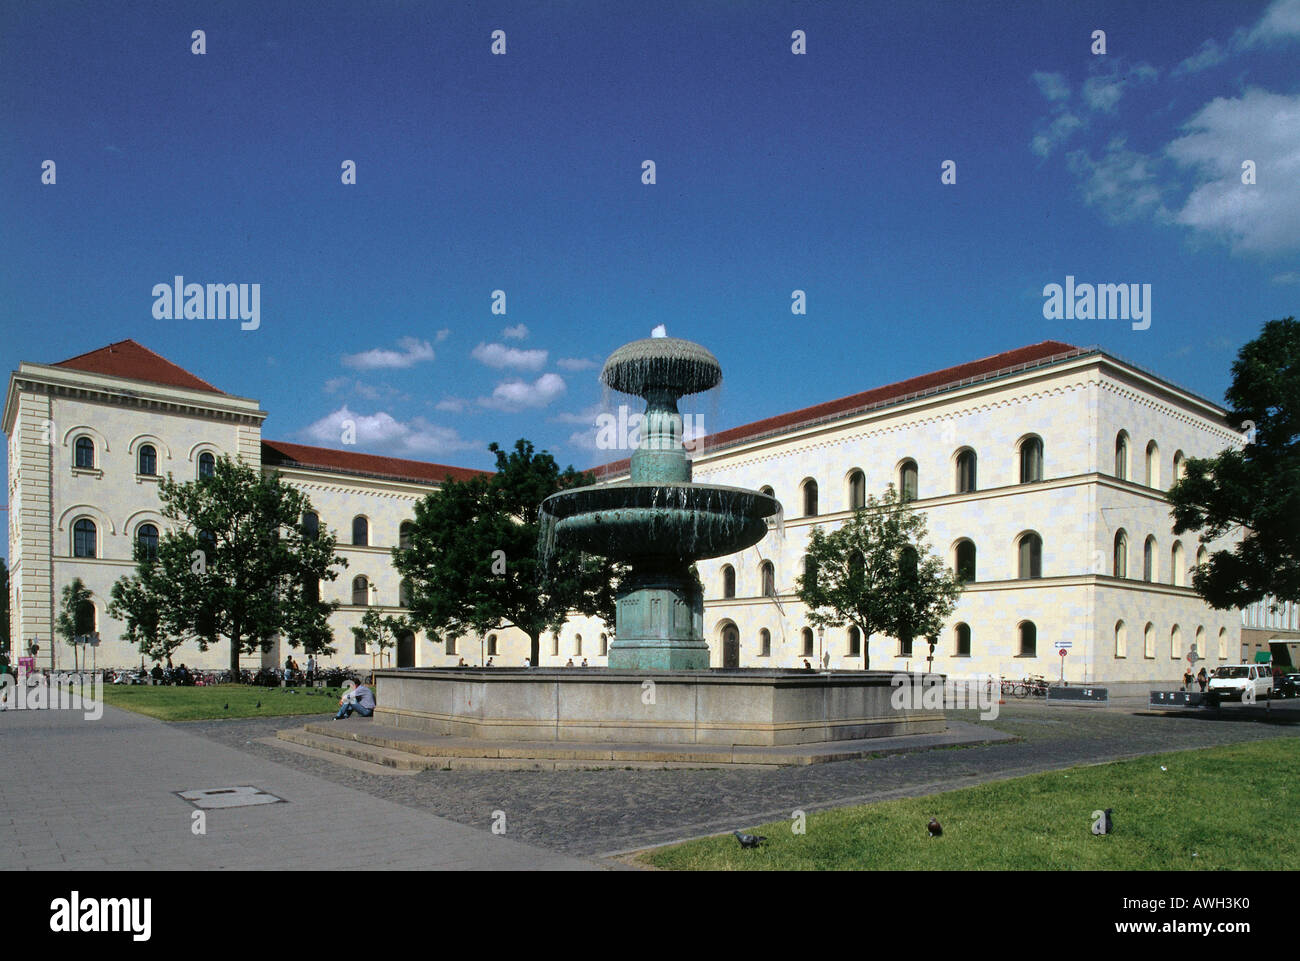 Alemania, Baviera, Munich, Ludwig-Maximillians-Universität, fuente en el centro de Geschwister-Scholl-Platz Foto de stock